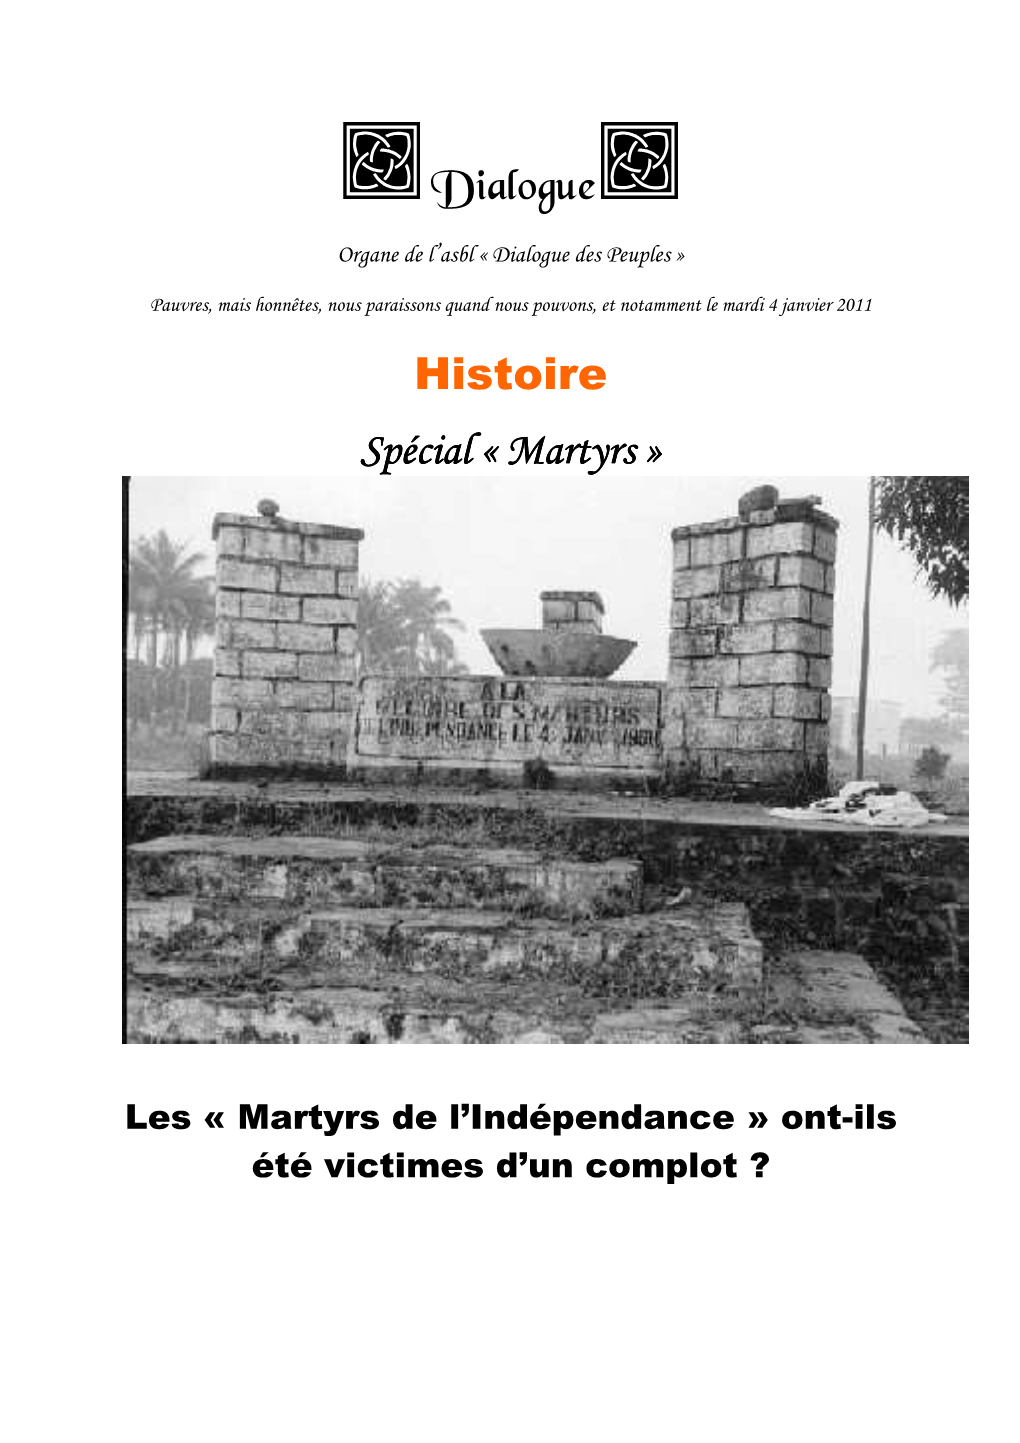 Histoire, Martyrs Du 4 Janvier